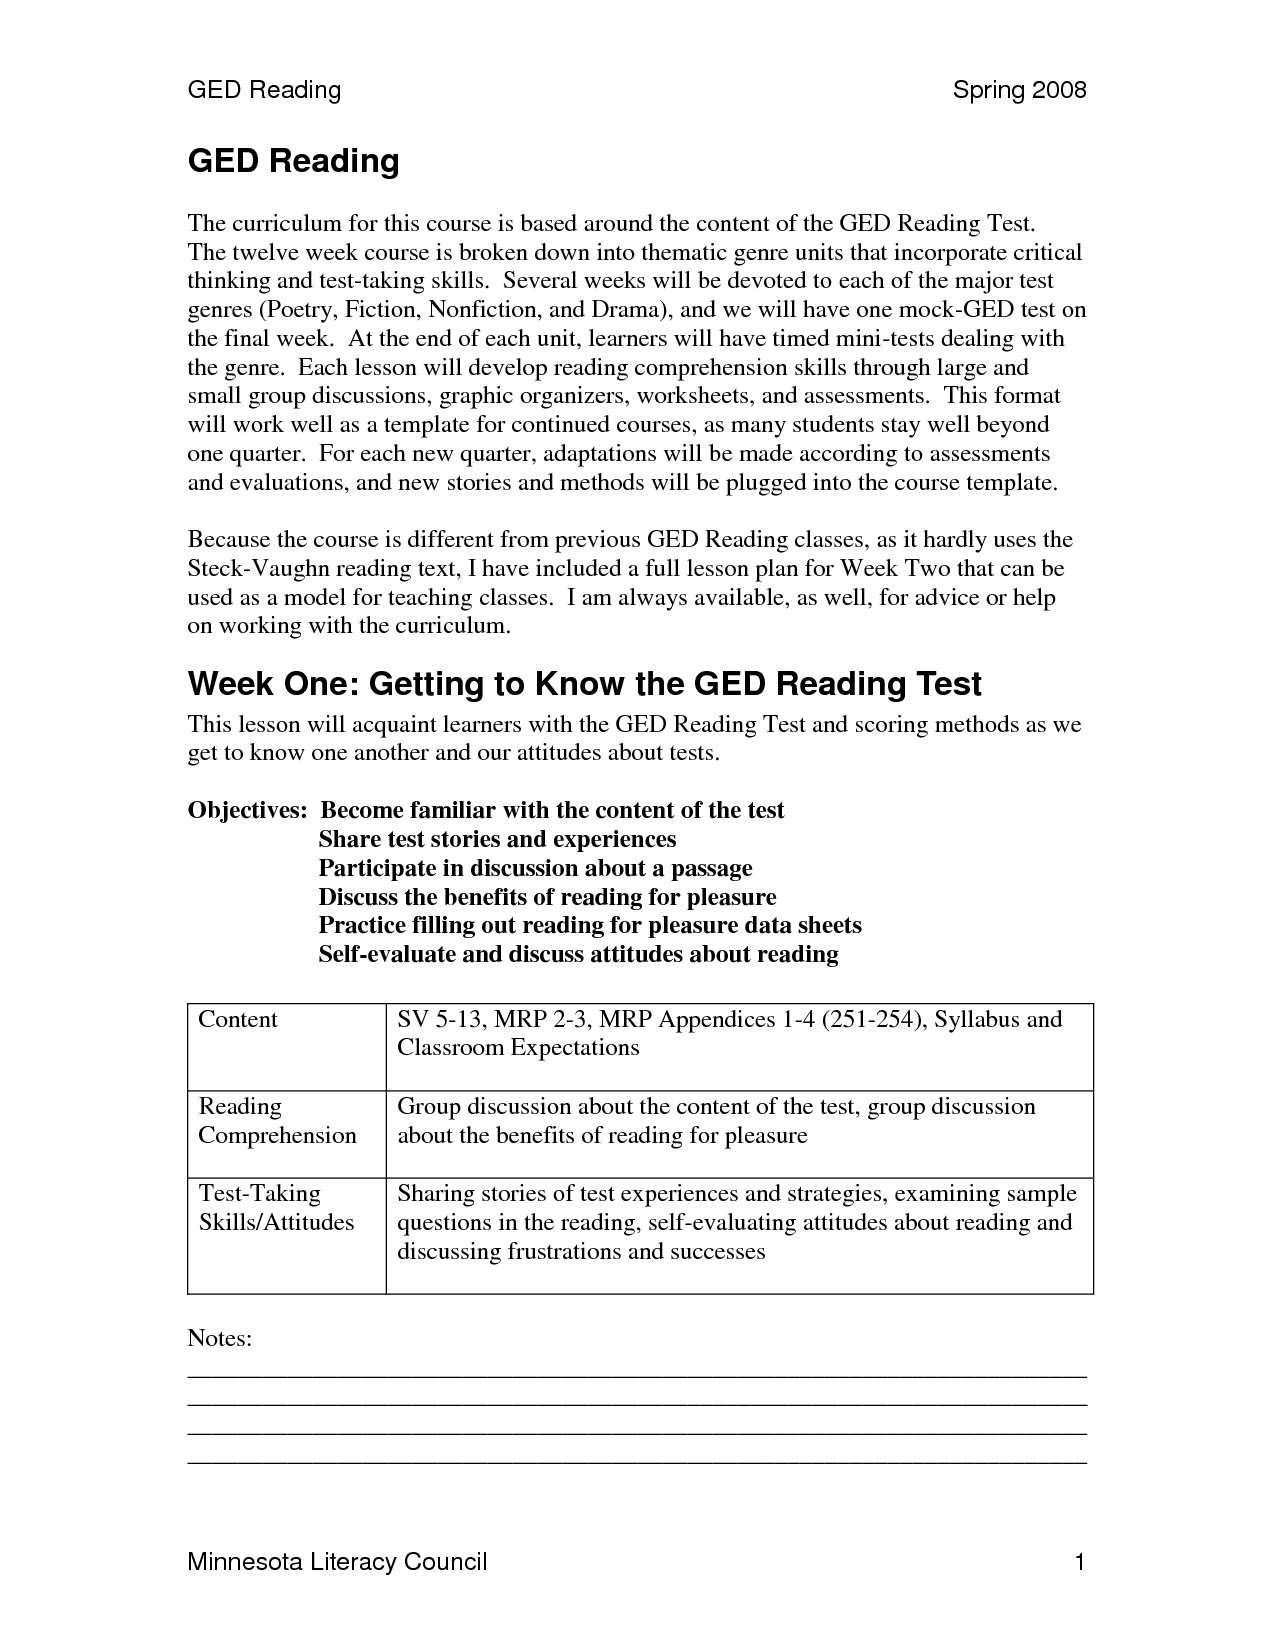 GED Practice Test Printable Worksheets Image